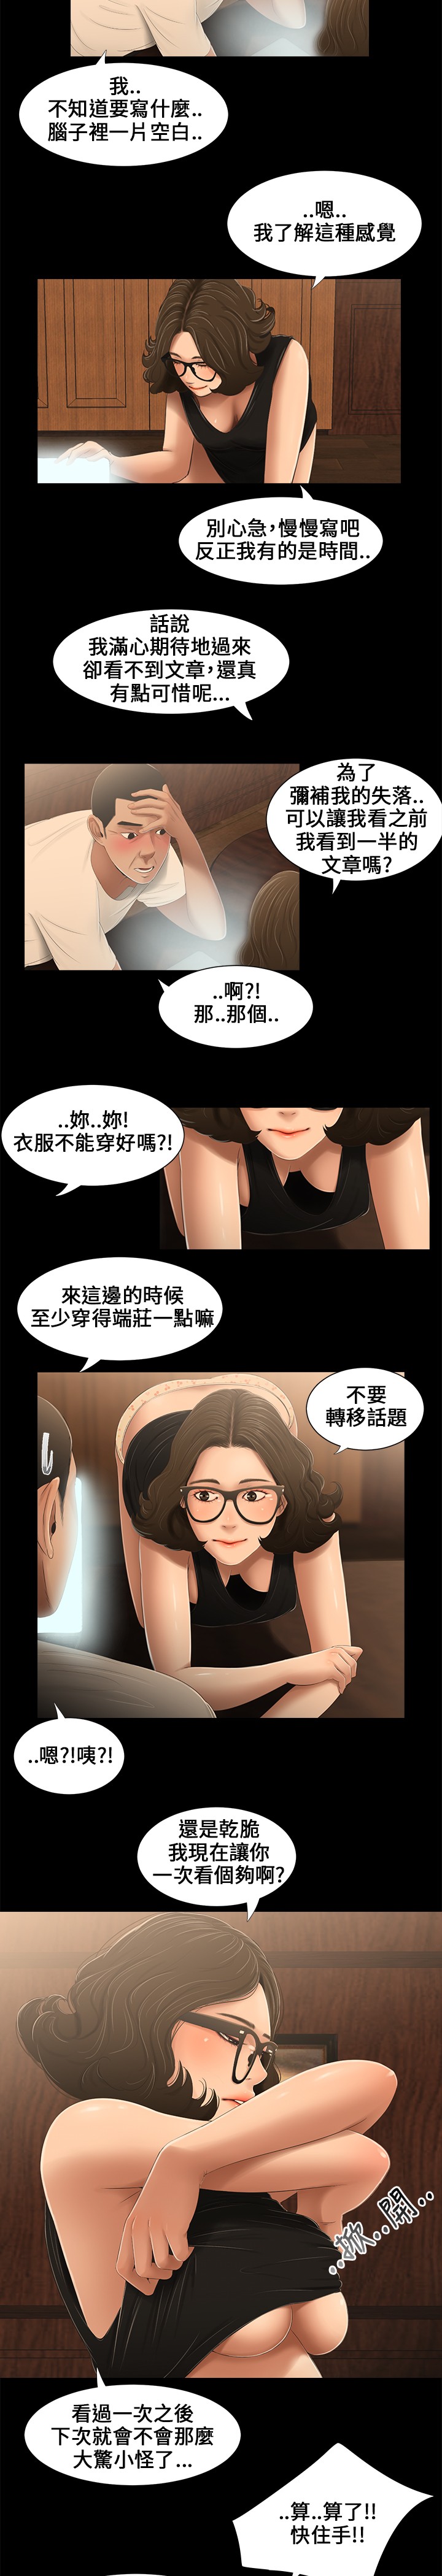 Three sisters 三姐妹Ch.13~21 (Chinese)中文 [愛摸] 三姐妹